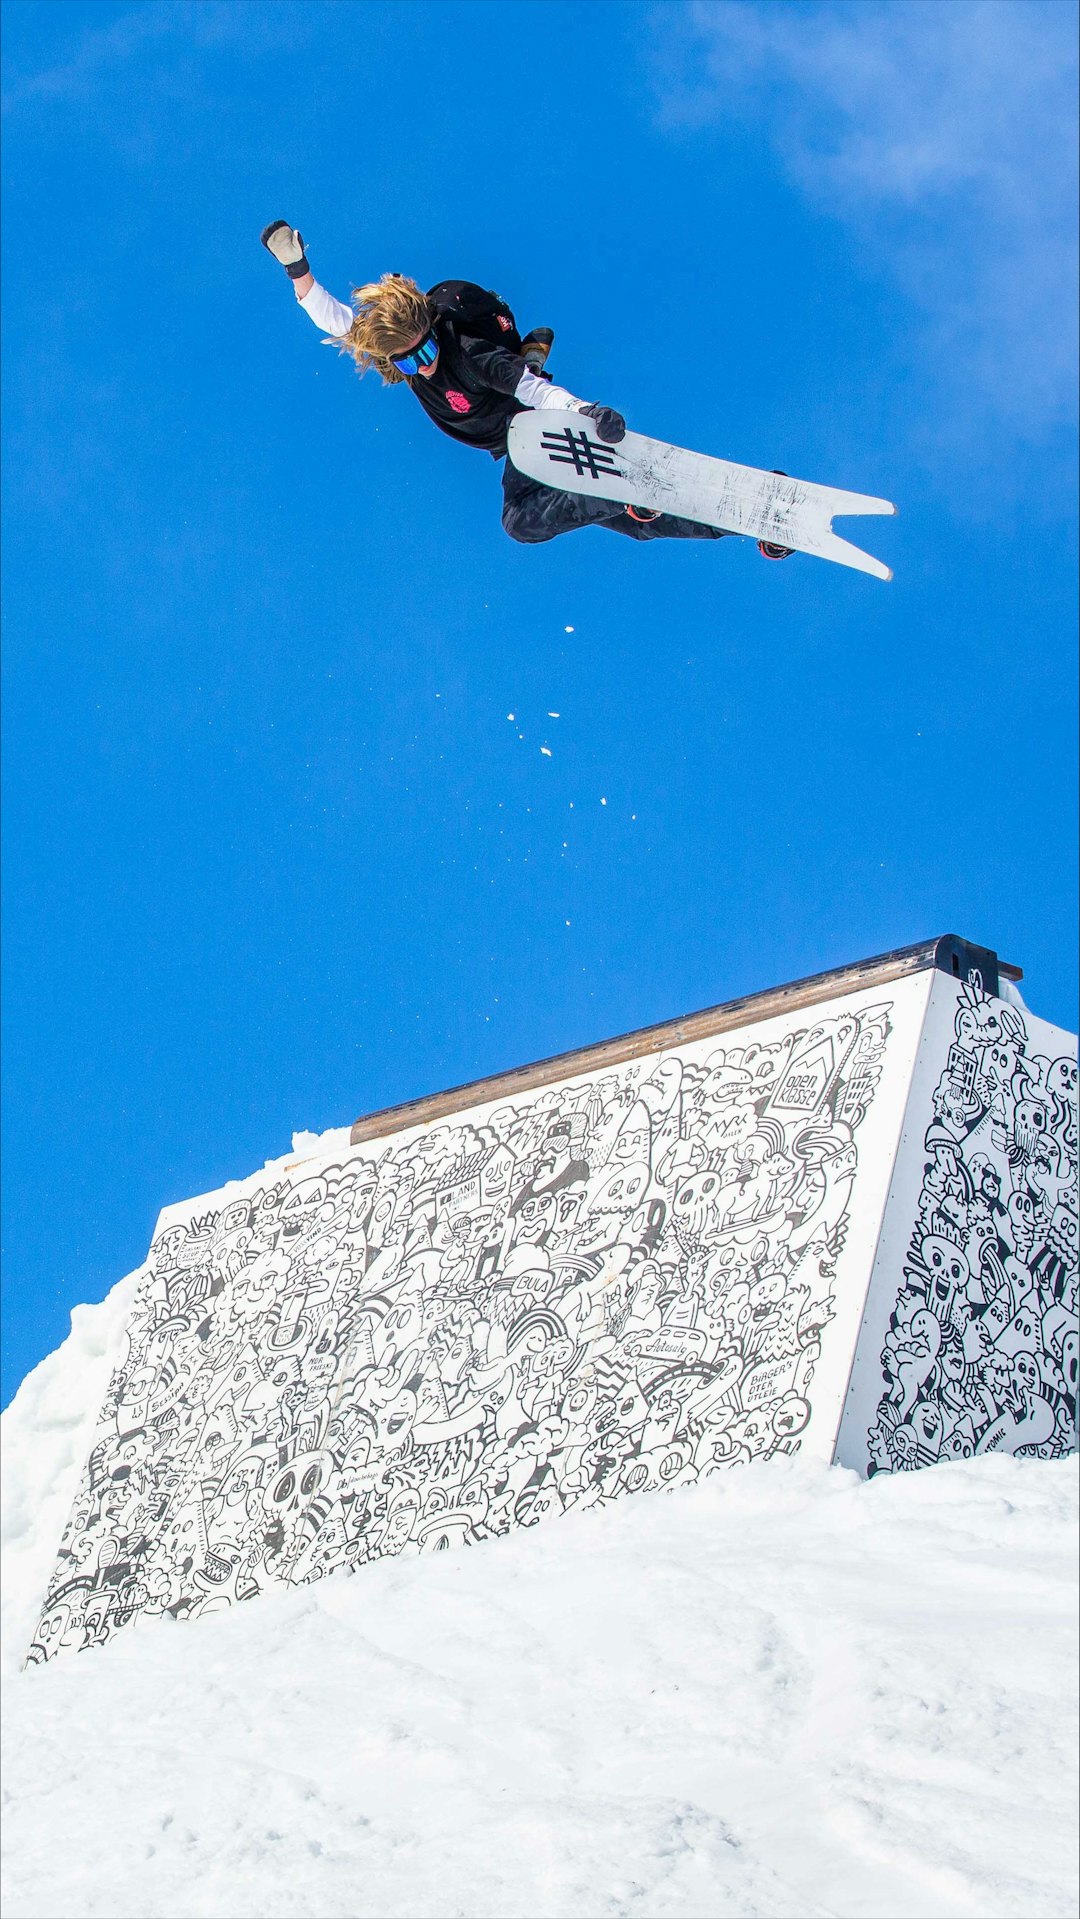 HELT ÅPEN: Open klasse er et arrangement for både snowboard og ski. Bilde: Finn Burrows og Chris Baldry/Norways Best 